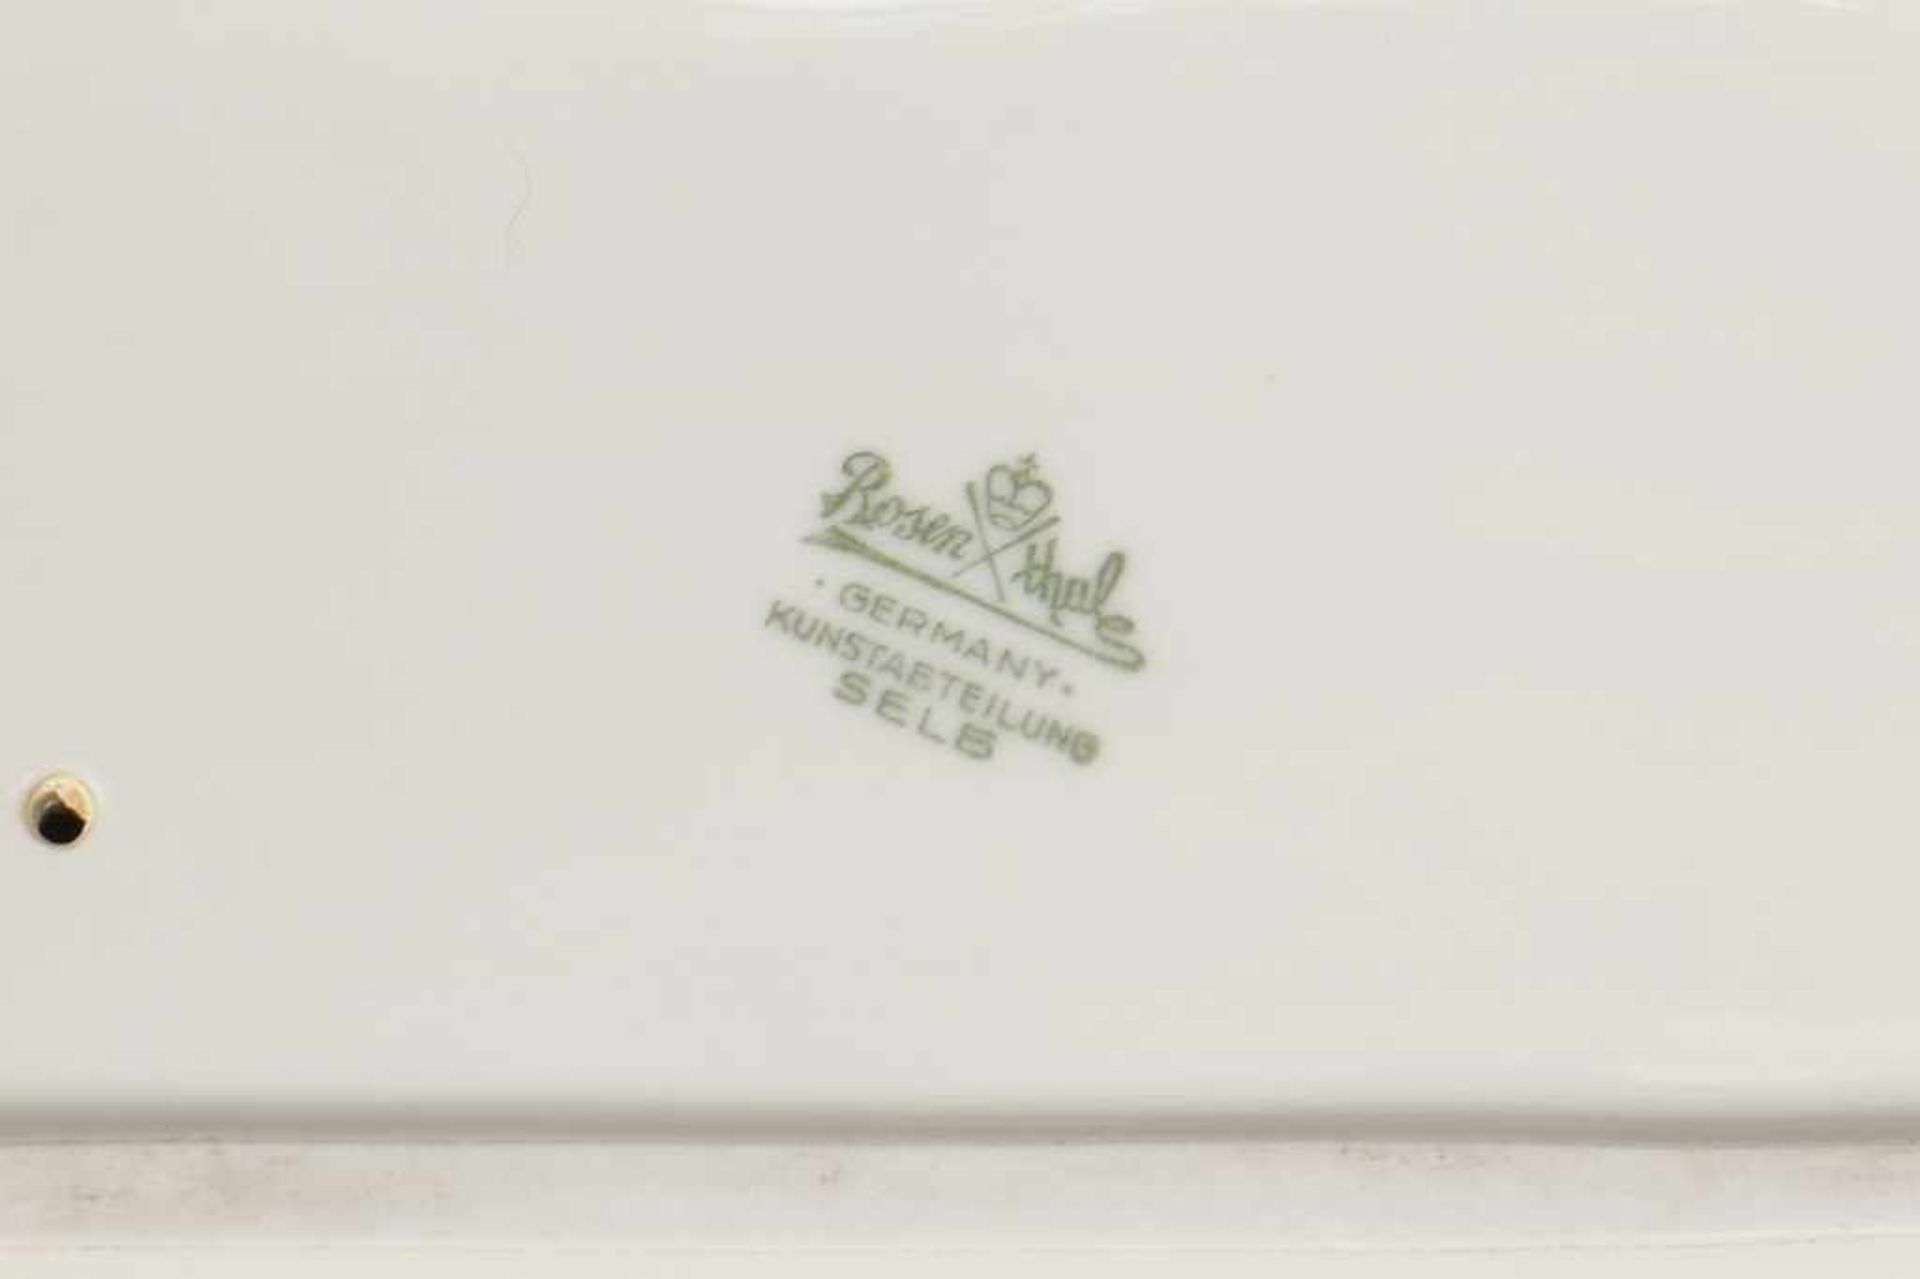 AUGUST GAUL für ROSENTHAL Porzellanfigur ¨Bison¨ 1936, Weißporzellan, Manufakturmarke, H 27cm, L - Bild 2 aus 2